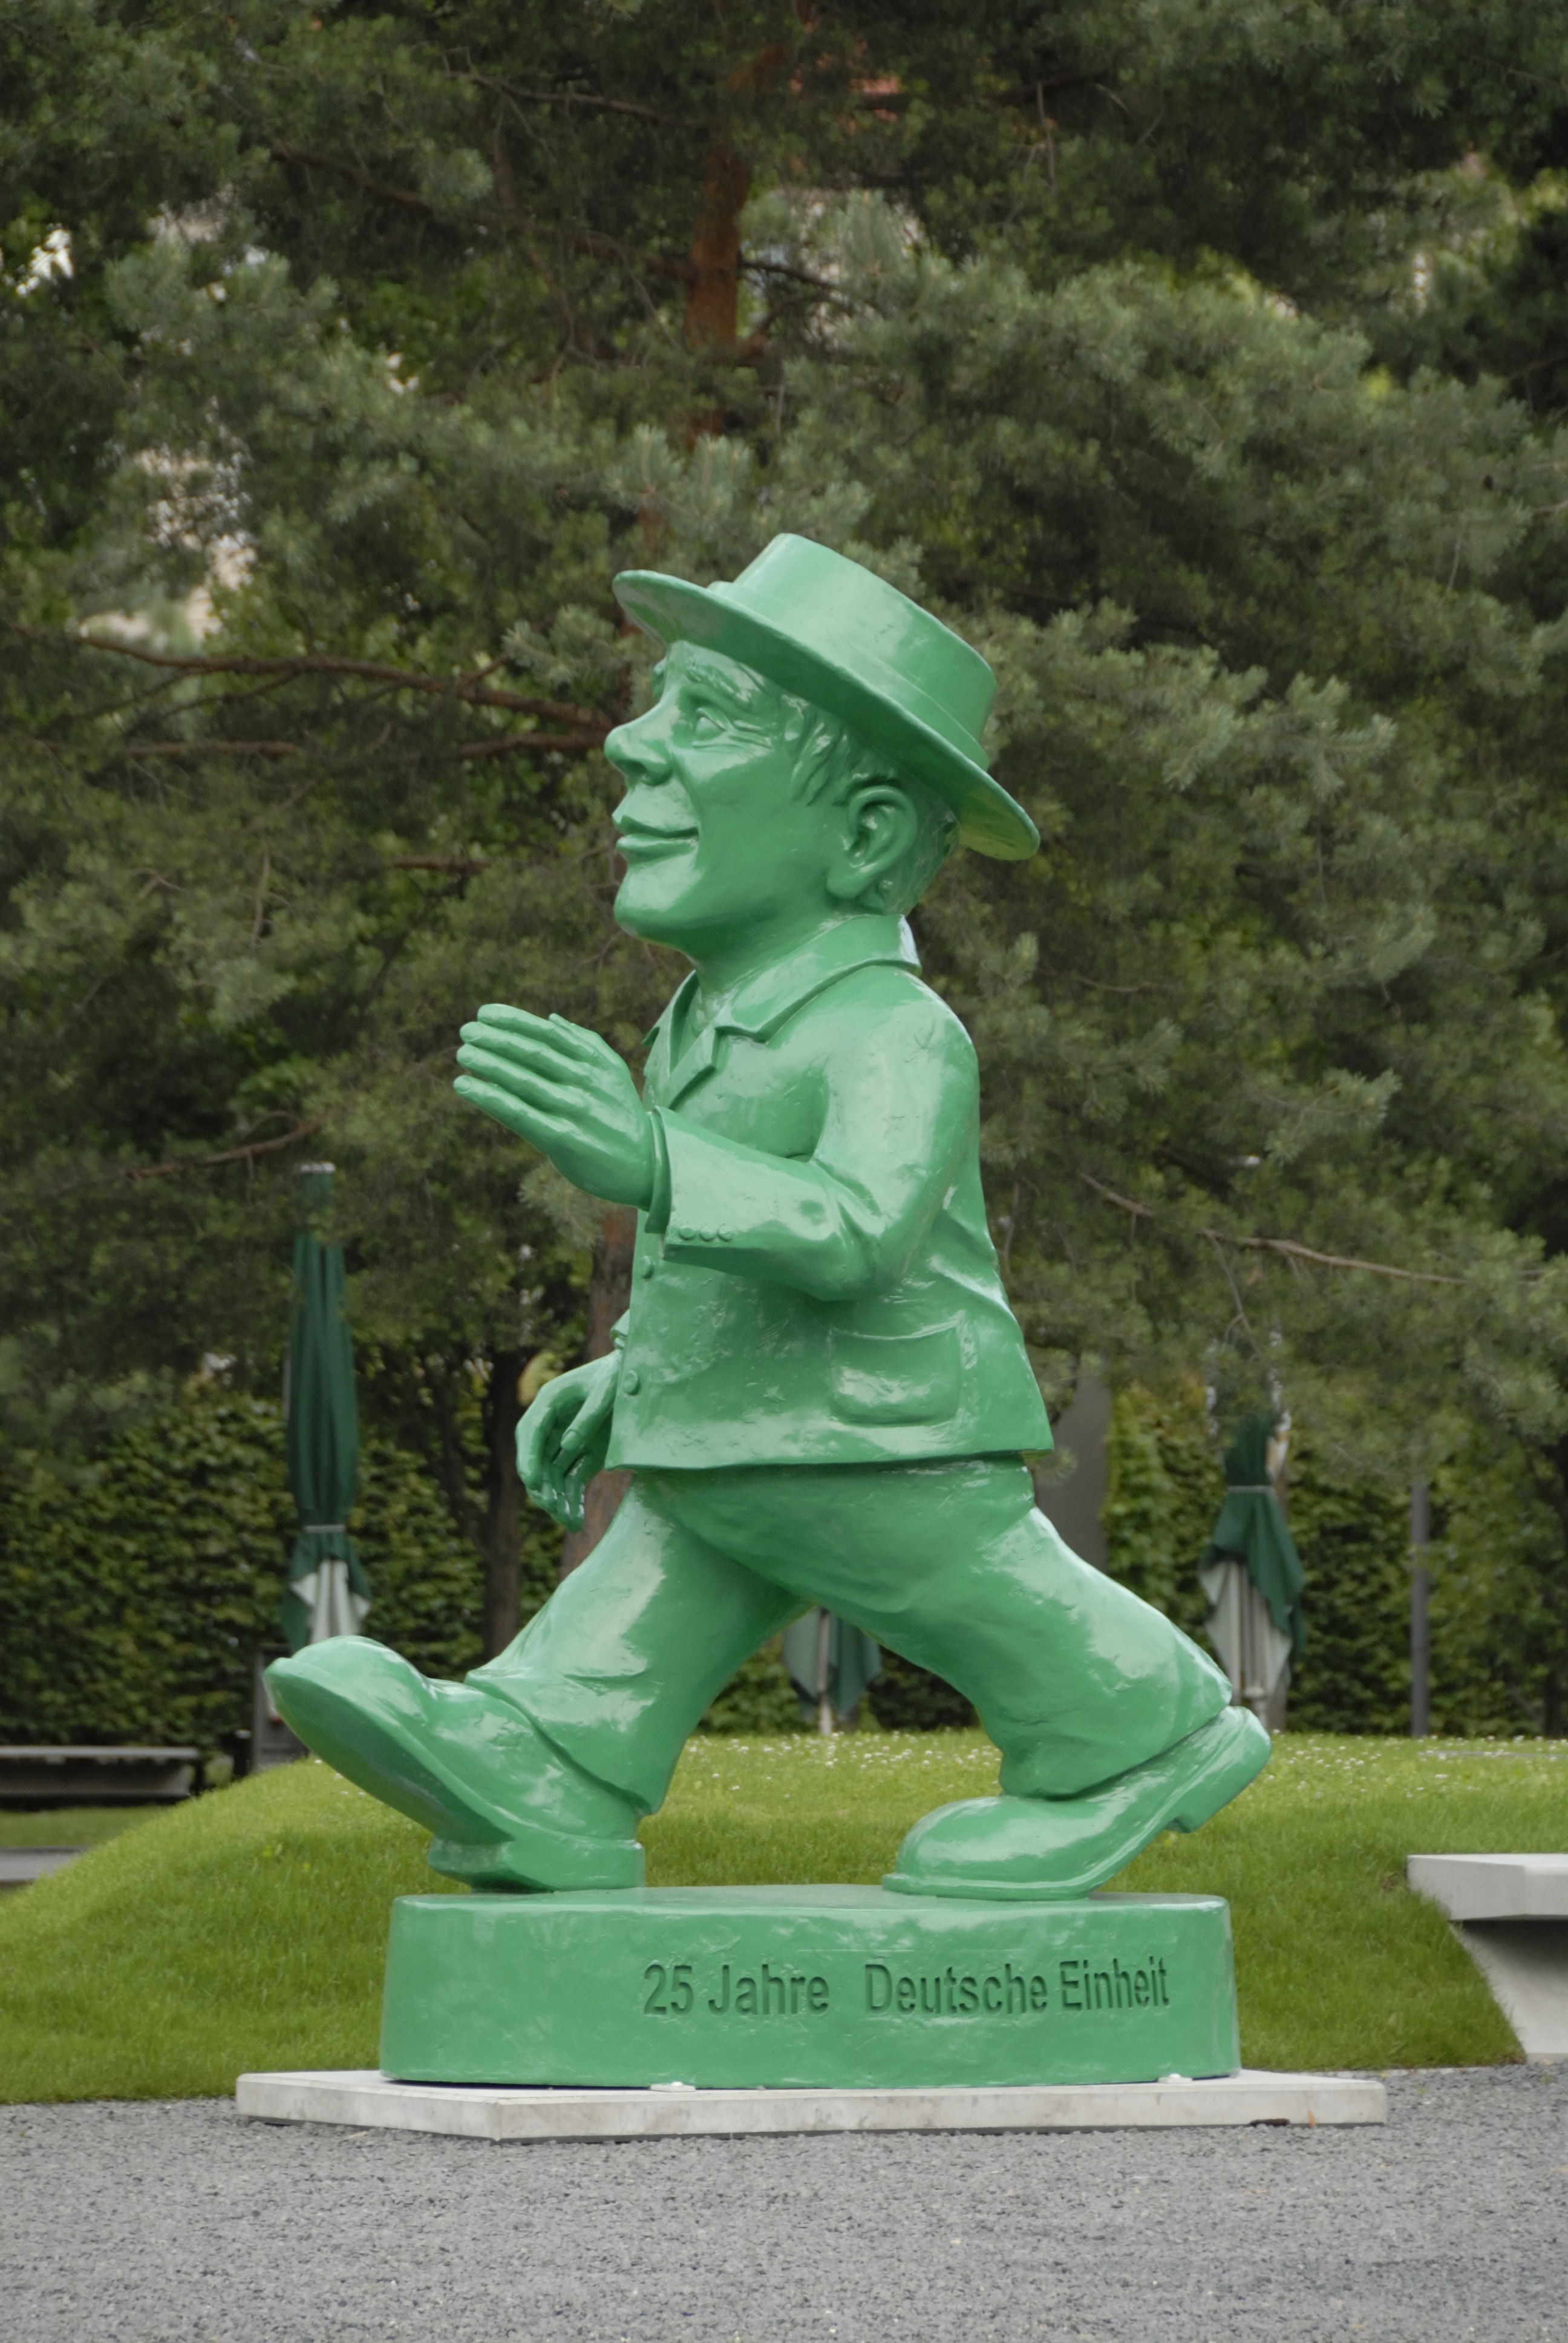 25 jahre deutsche einheit statue